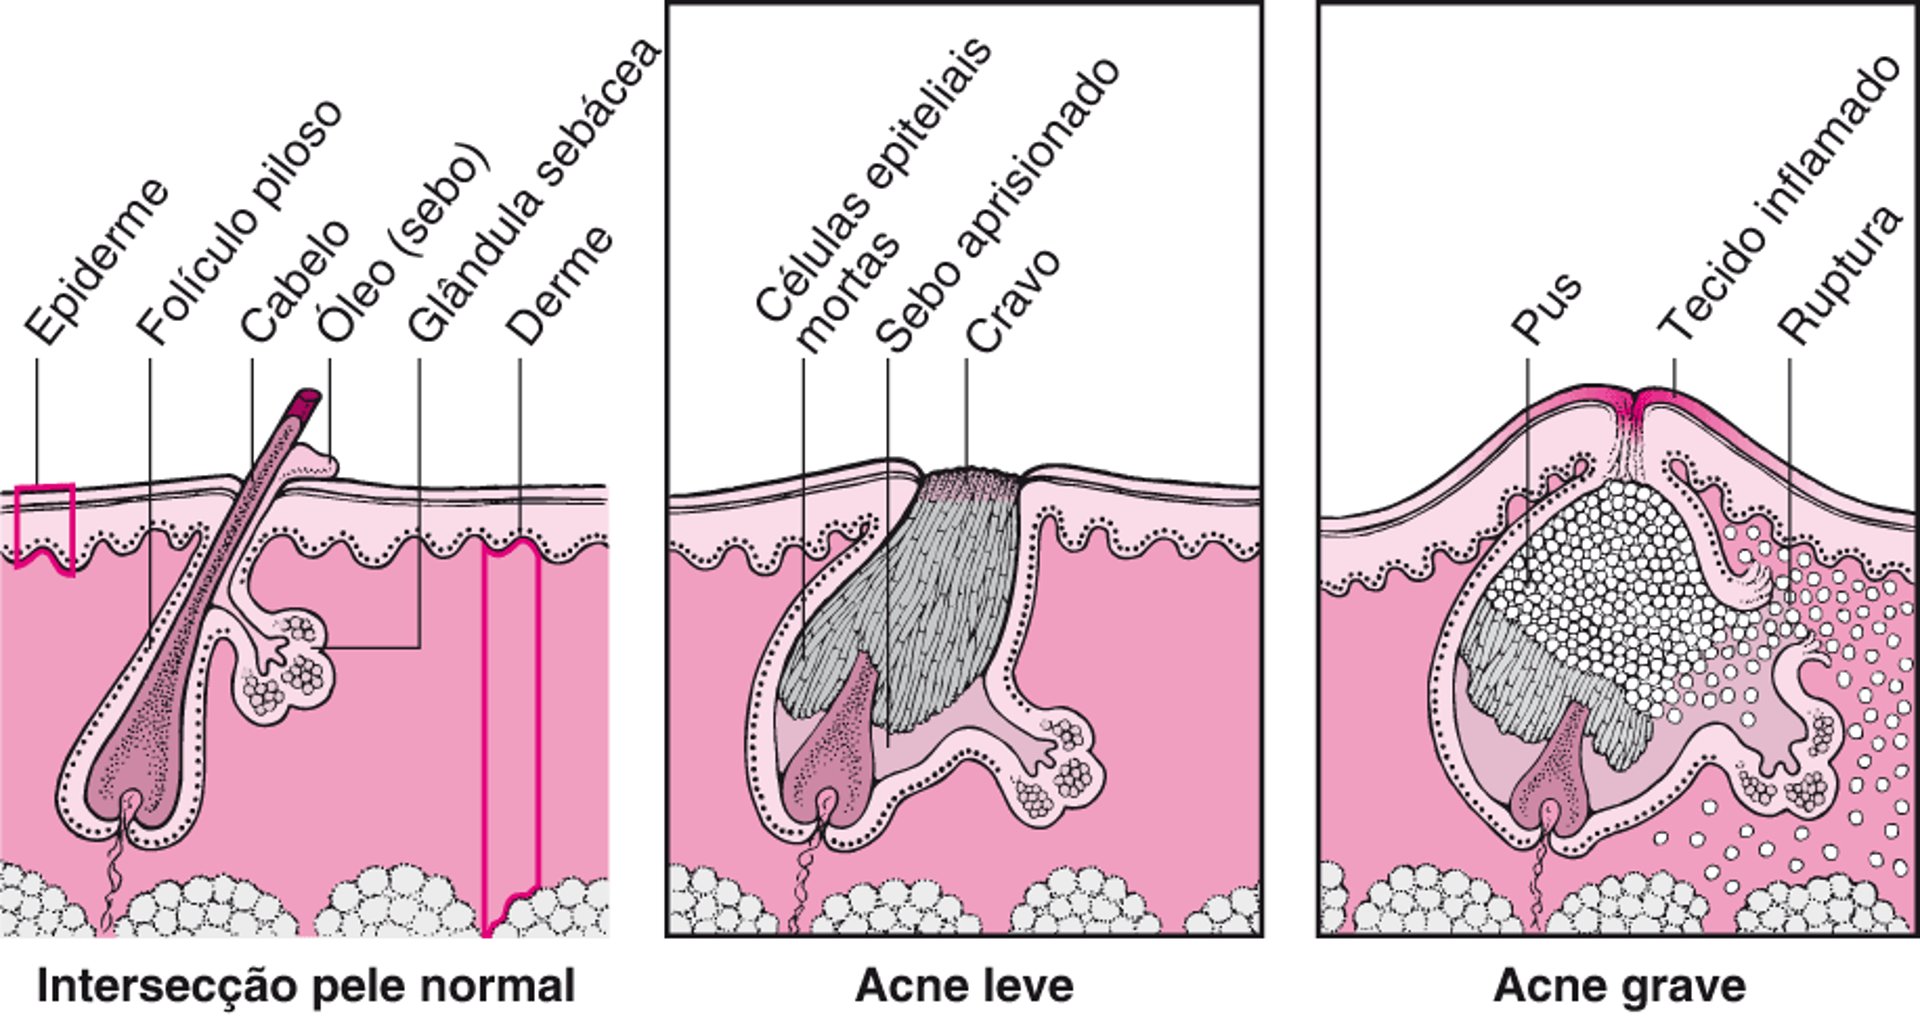 Comparação entre acne leve e acne grave